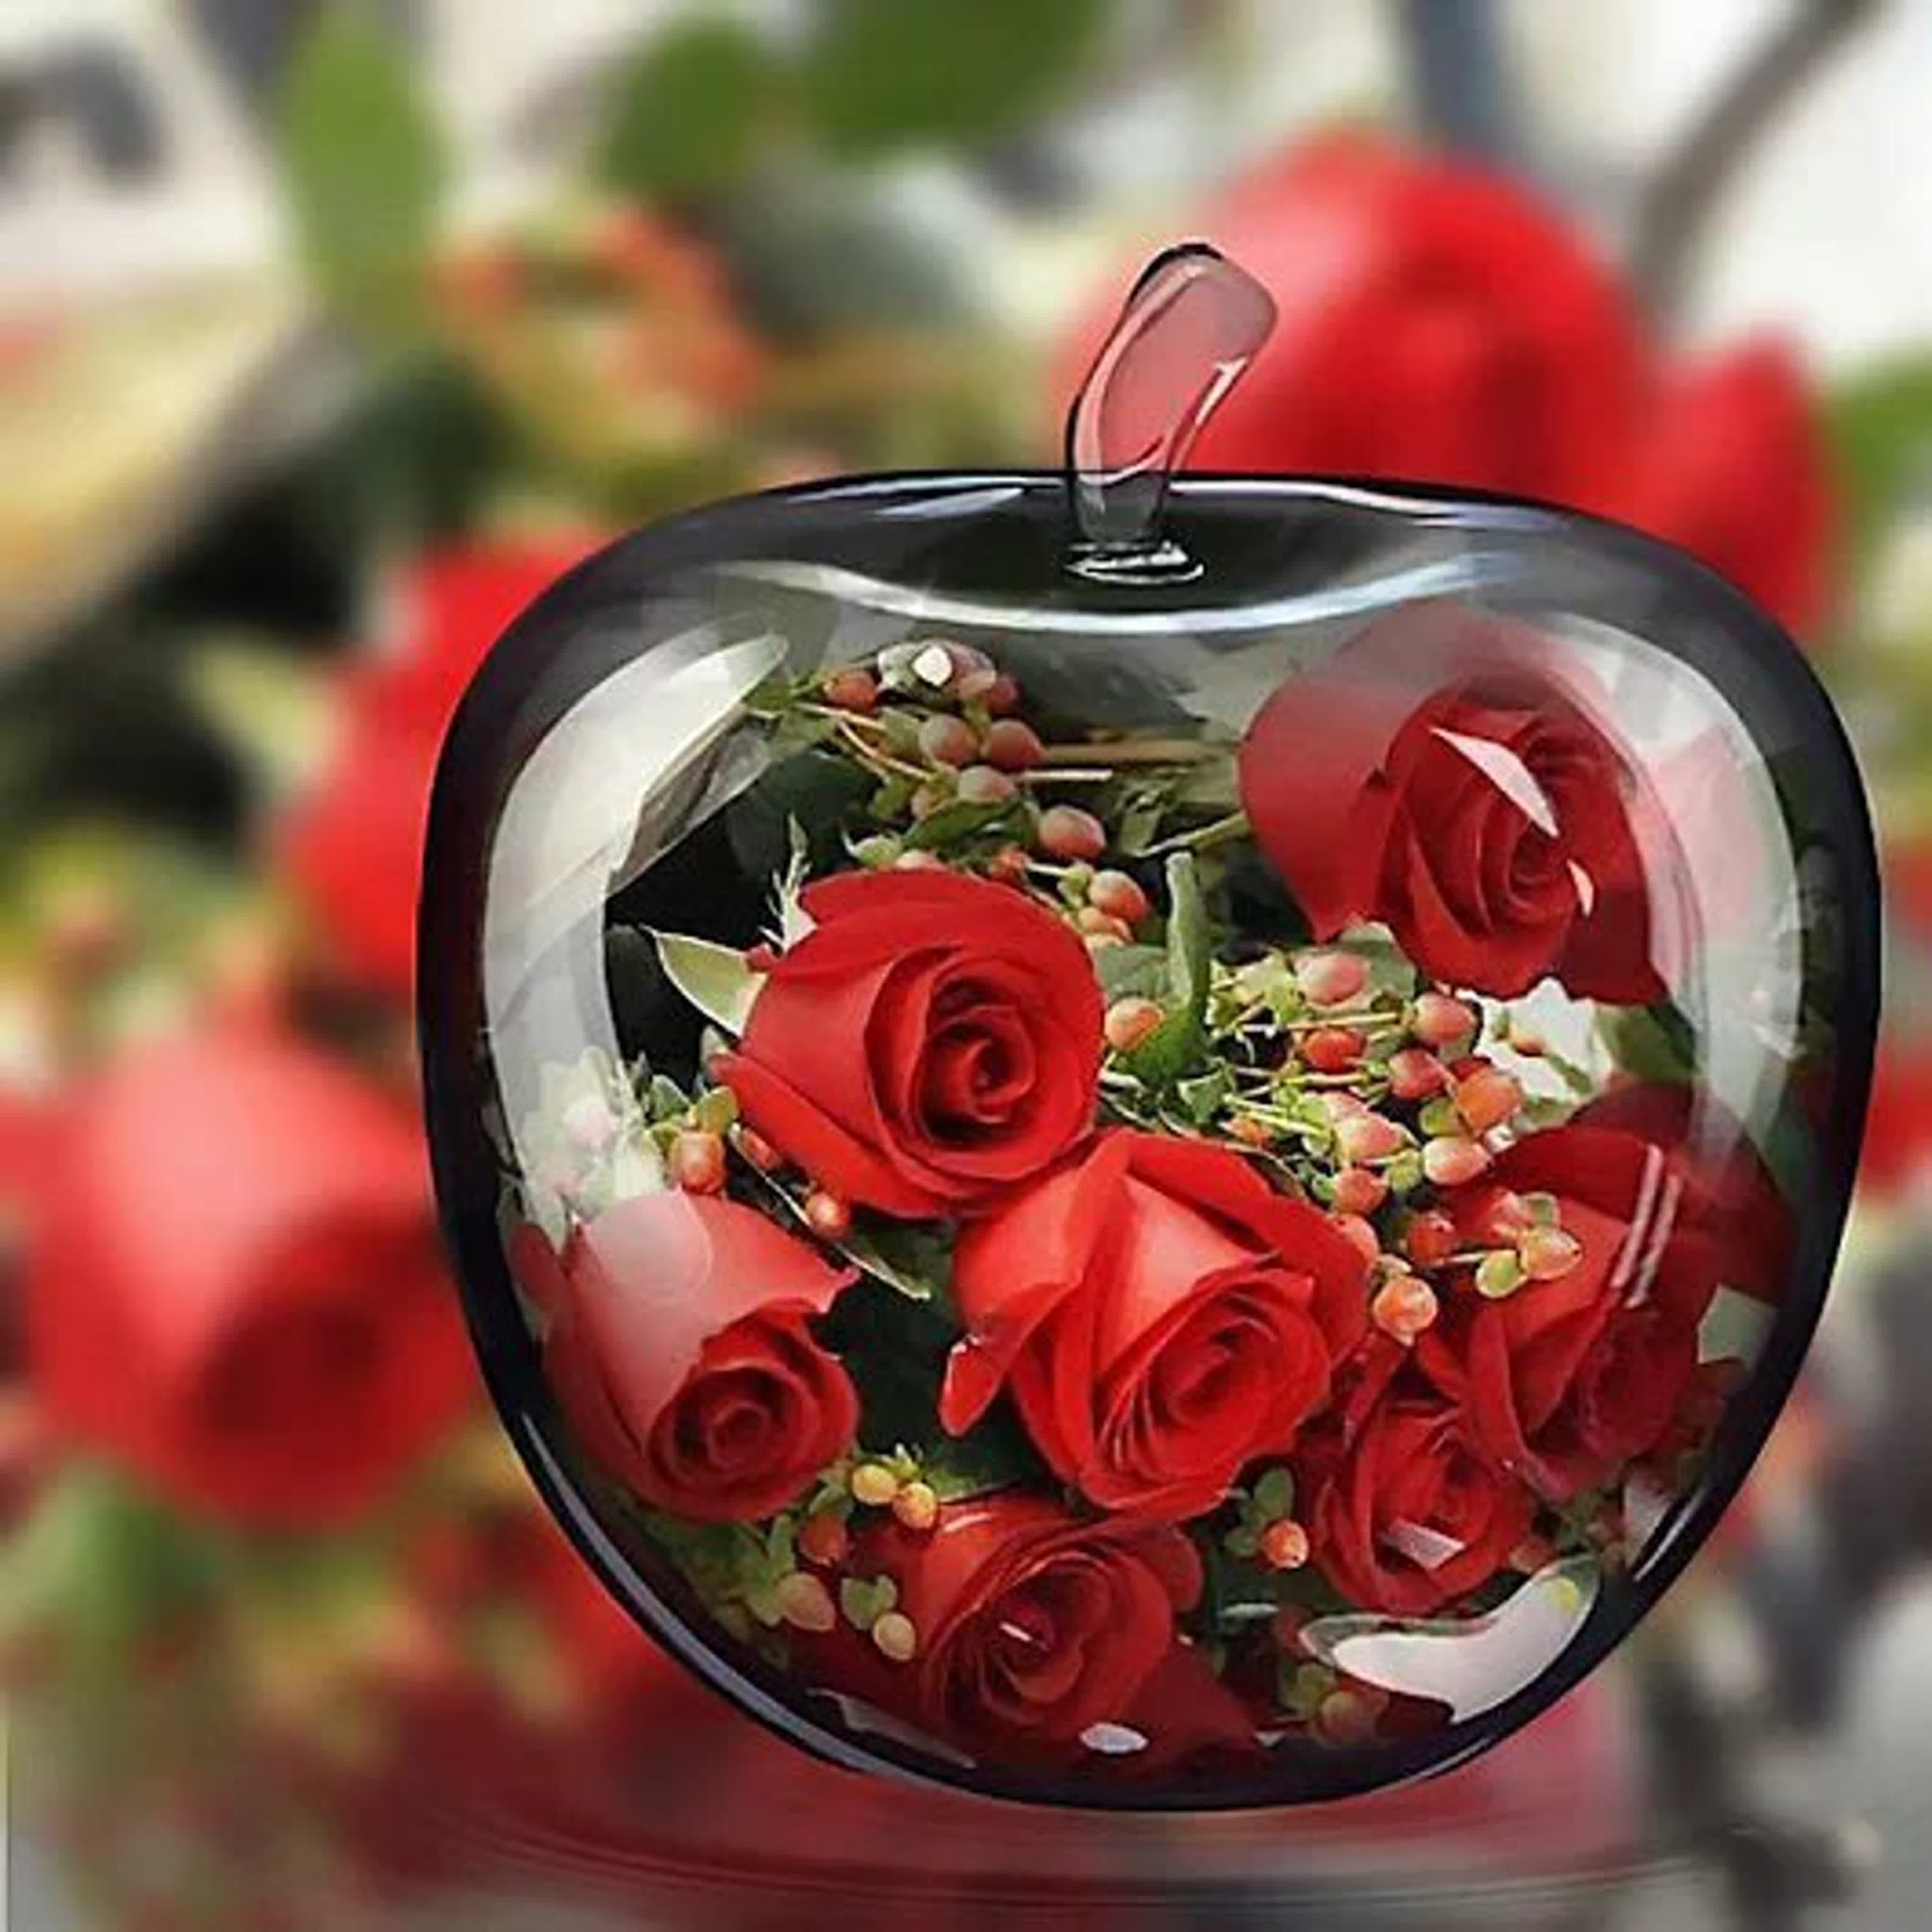 Сердце счастья и радостей просит а годов. Цветы на счастье. Доброе утро розы счастья и здоровья. Доброго дня и хорошего настроения розы. Прекрасный день.